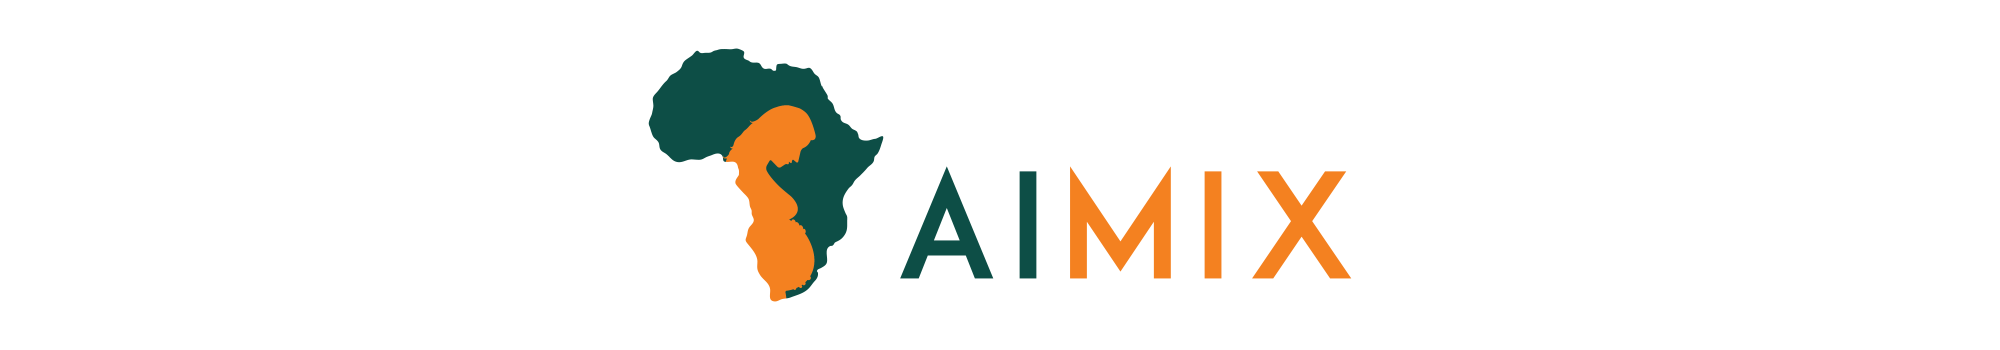 AIMIX_Logo_Full_Colour-01